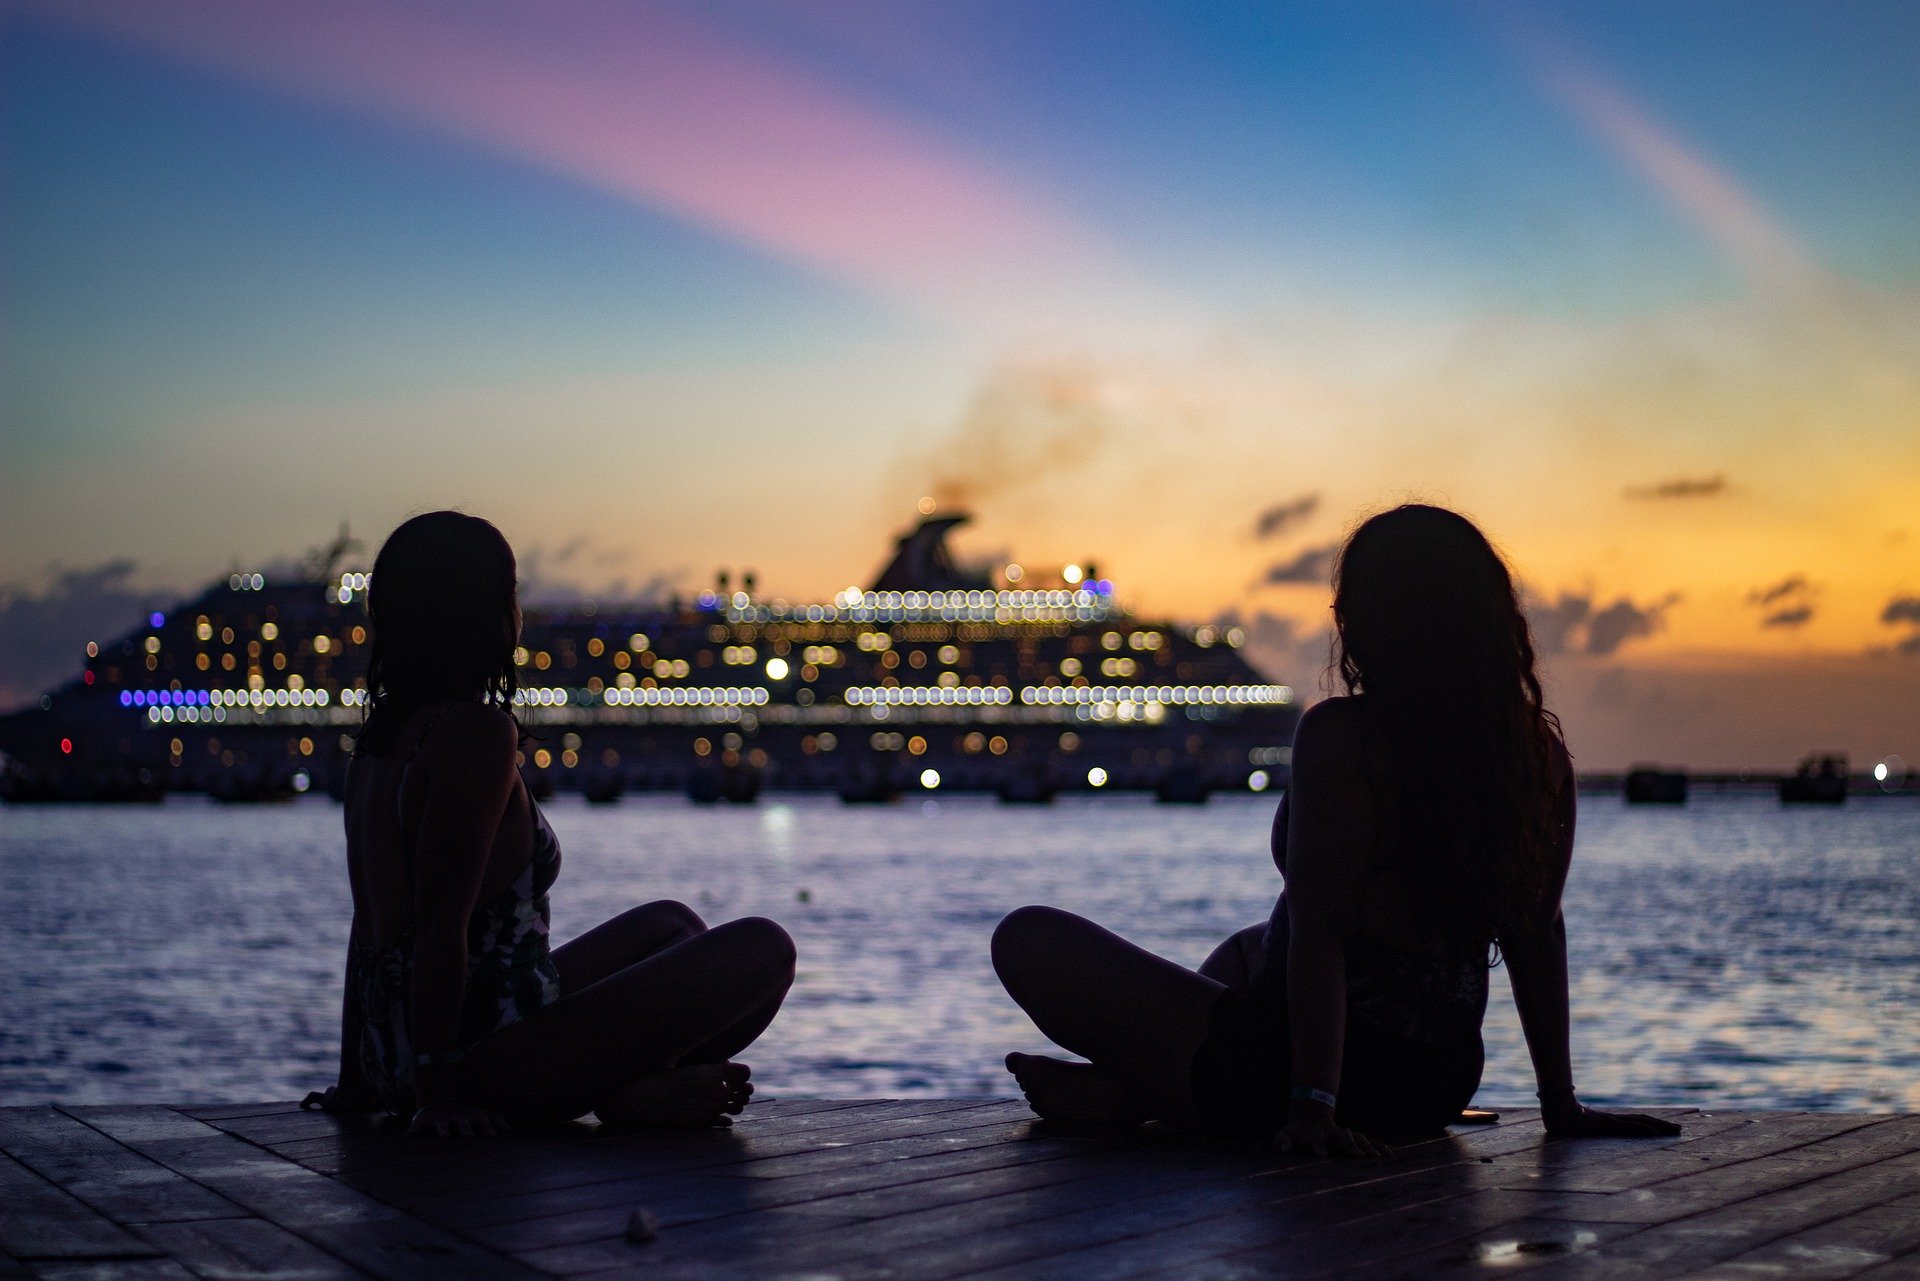 海边 <span style='color:red;'>码头</span>，两个坐在岸边木栈道上的欧美妇女高清桌面壁纸图片 墨西哥